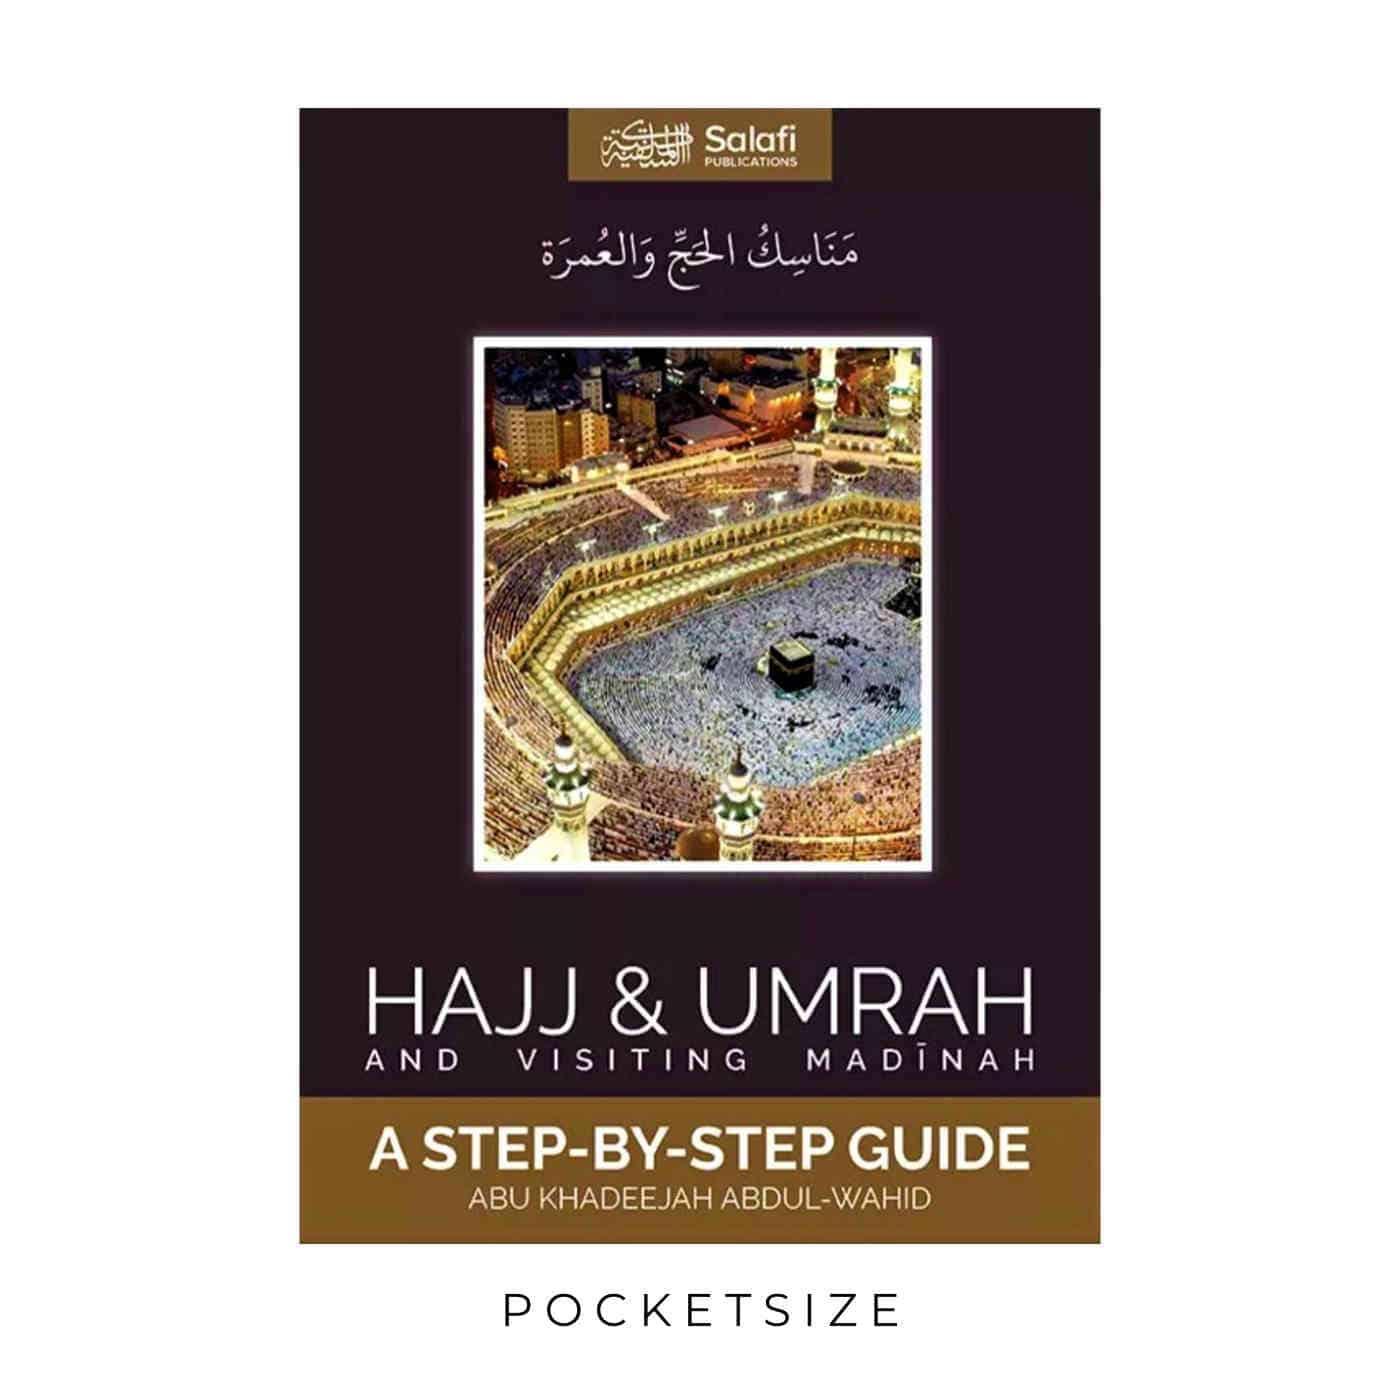 Hajj & Umrah And Visiting Madinah - A Step-By-Step Guide